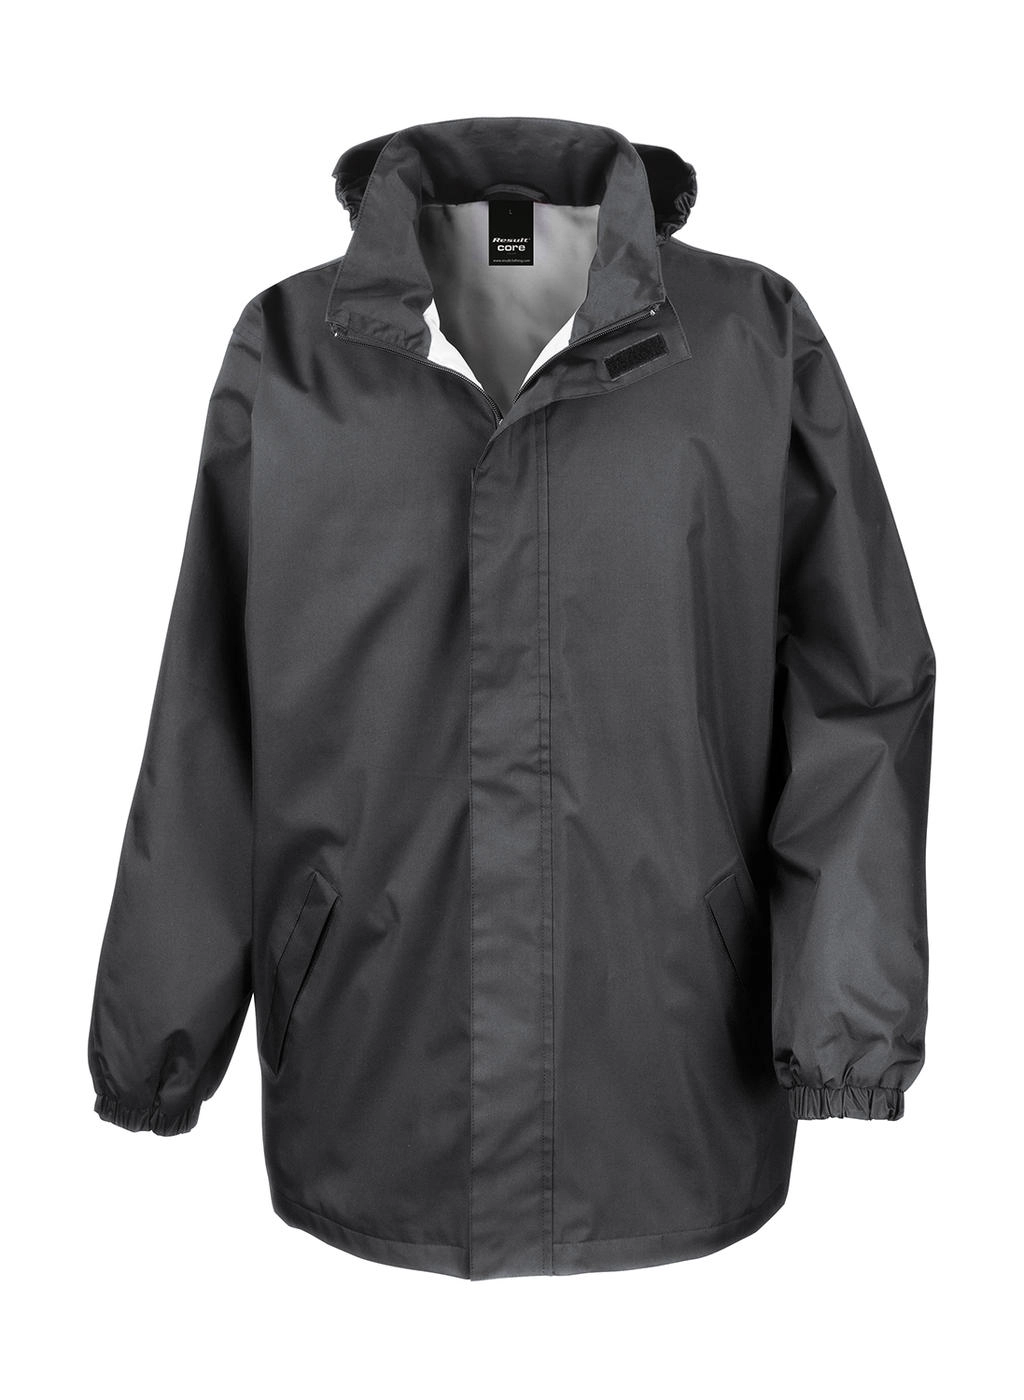 Core Midweight Jacket zum Besticken und Bedrucken in der Farbe Steel Grey mit Ihren Logo, Schriftzug oder Motiv.